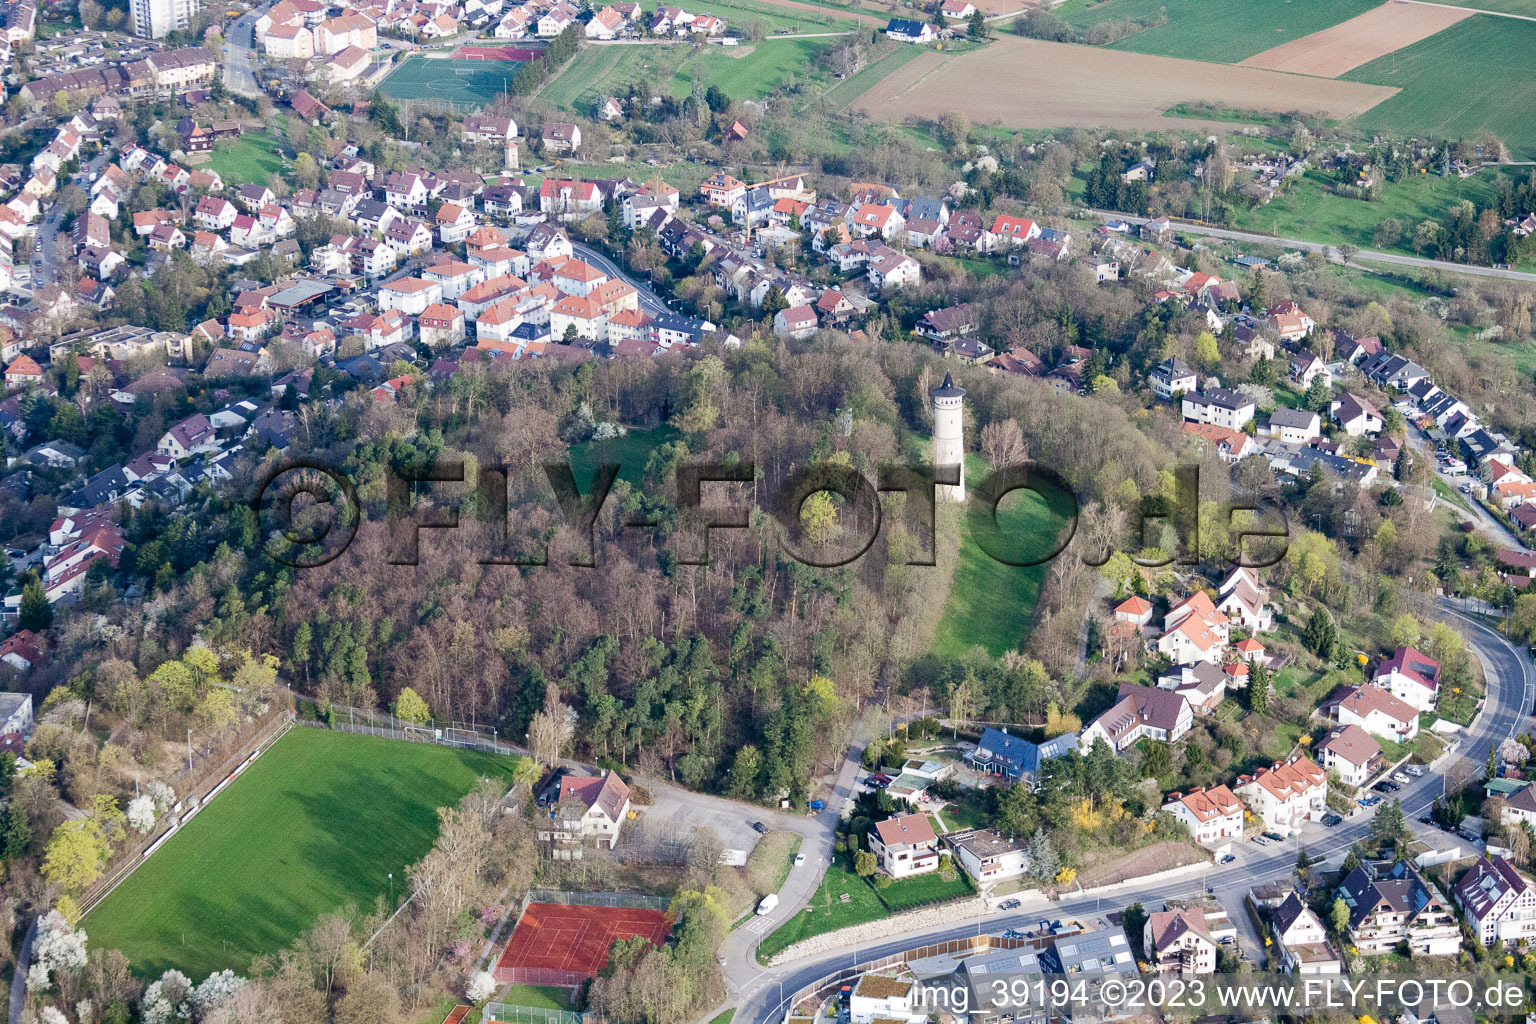 Luftbild von Engelbergturm in Leonberg im Bundesland Baden-Württemberg, Deutschland